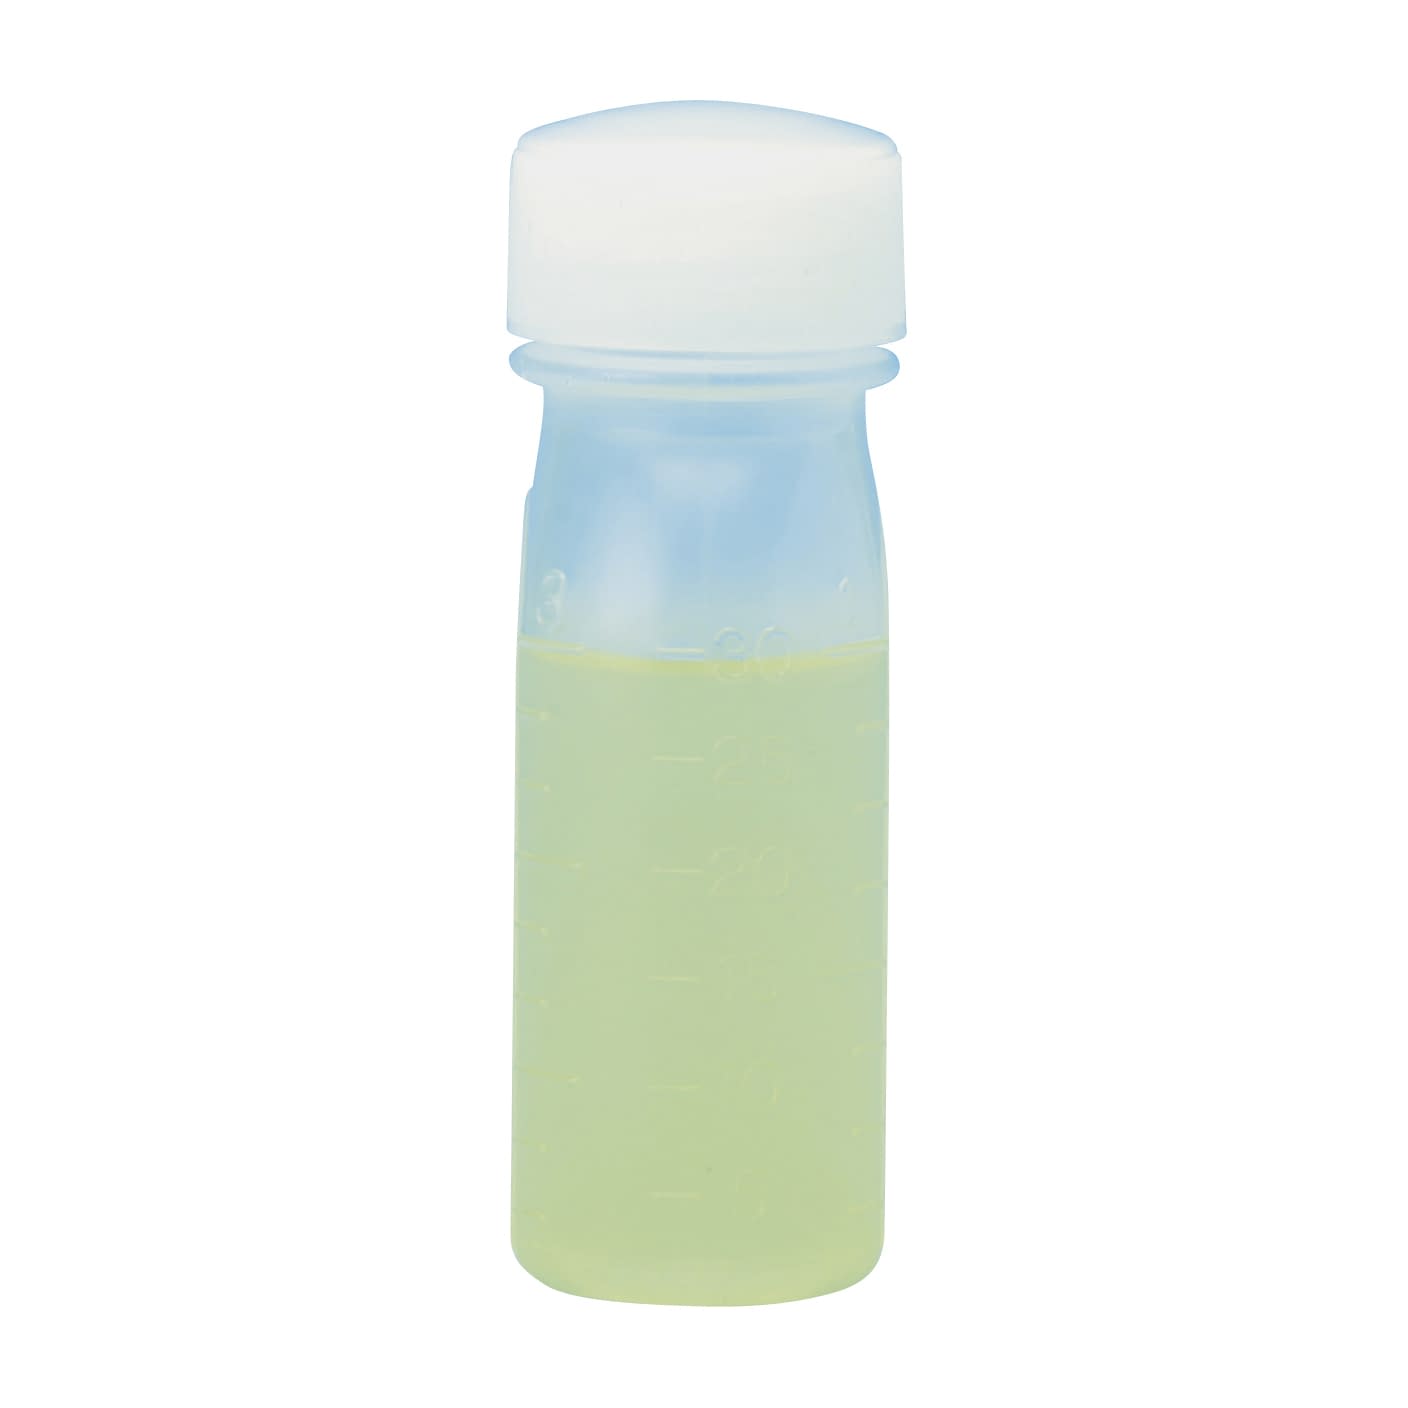 サンケミ 1型投薬瓶 10004 150CC 100ホン 投薬瓶 25-2826-03150cc緑【サンケミカル】(10004)(25-2826-03-05)